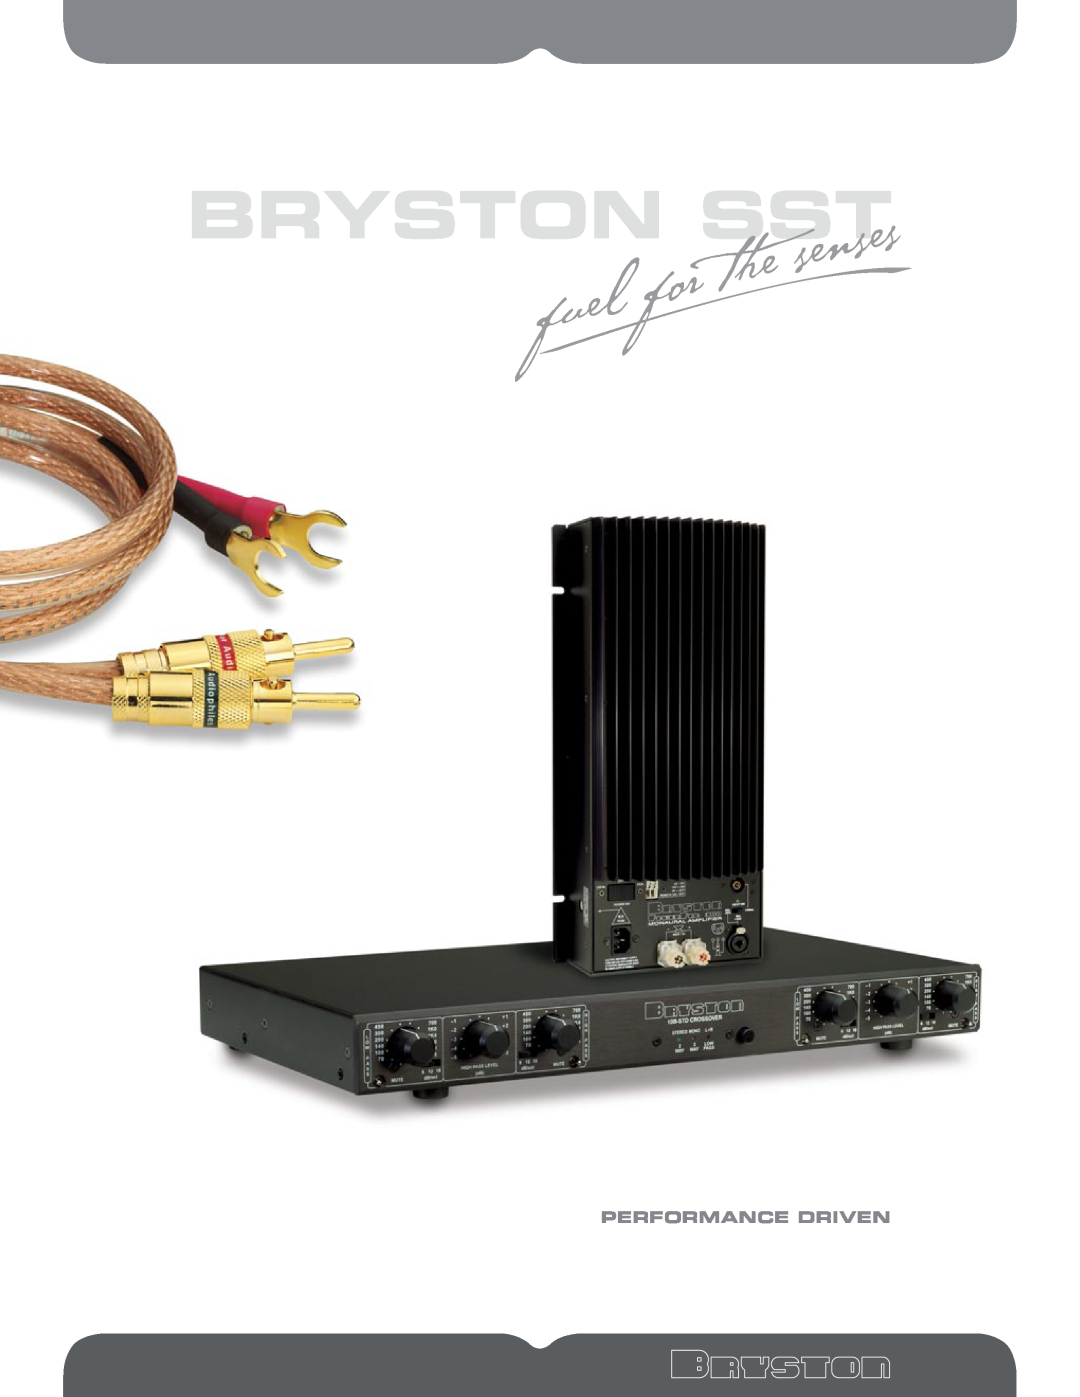 Bryston 10B LR manual Bryston Sst, Performance Driven 